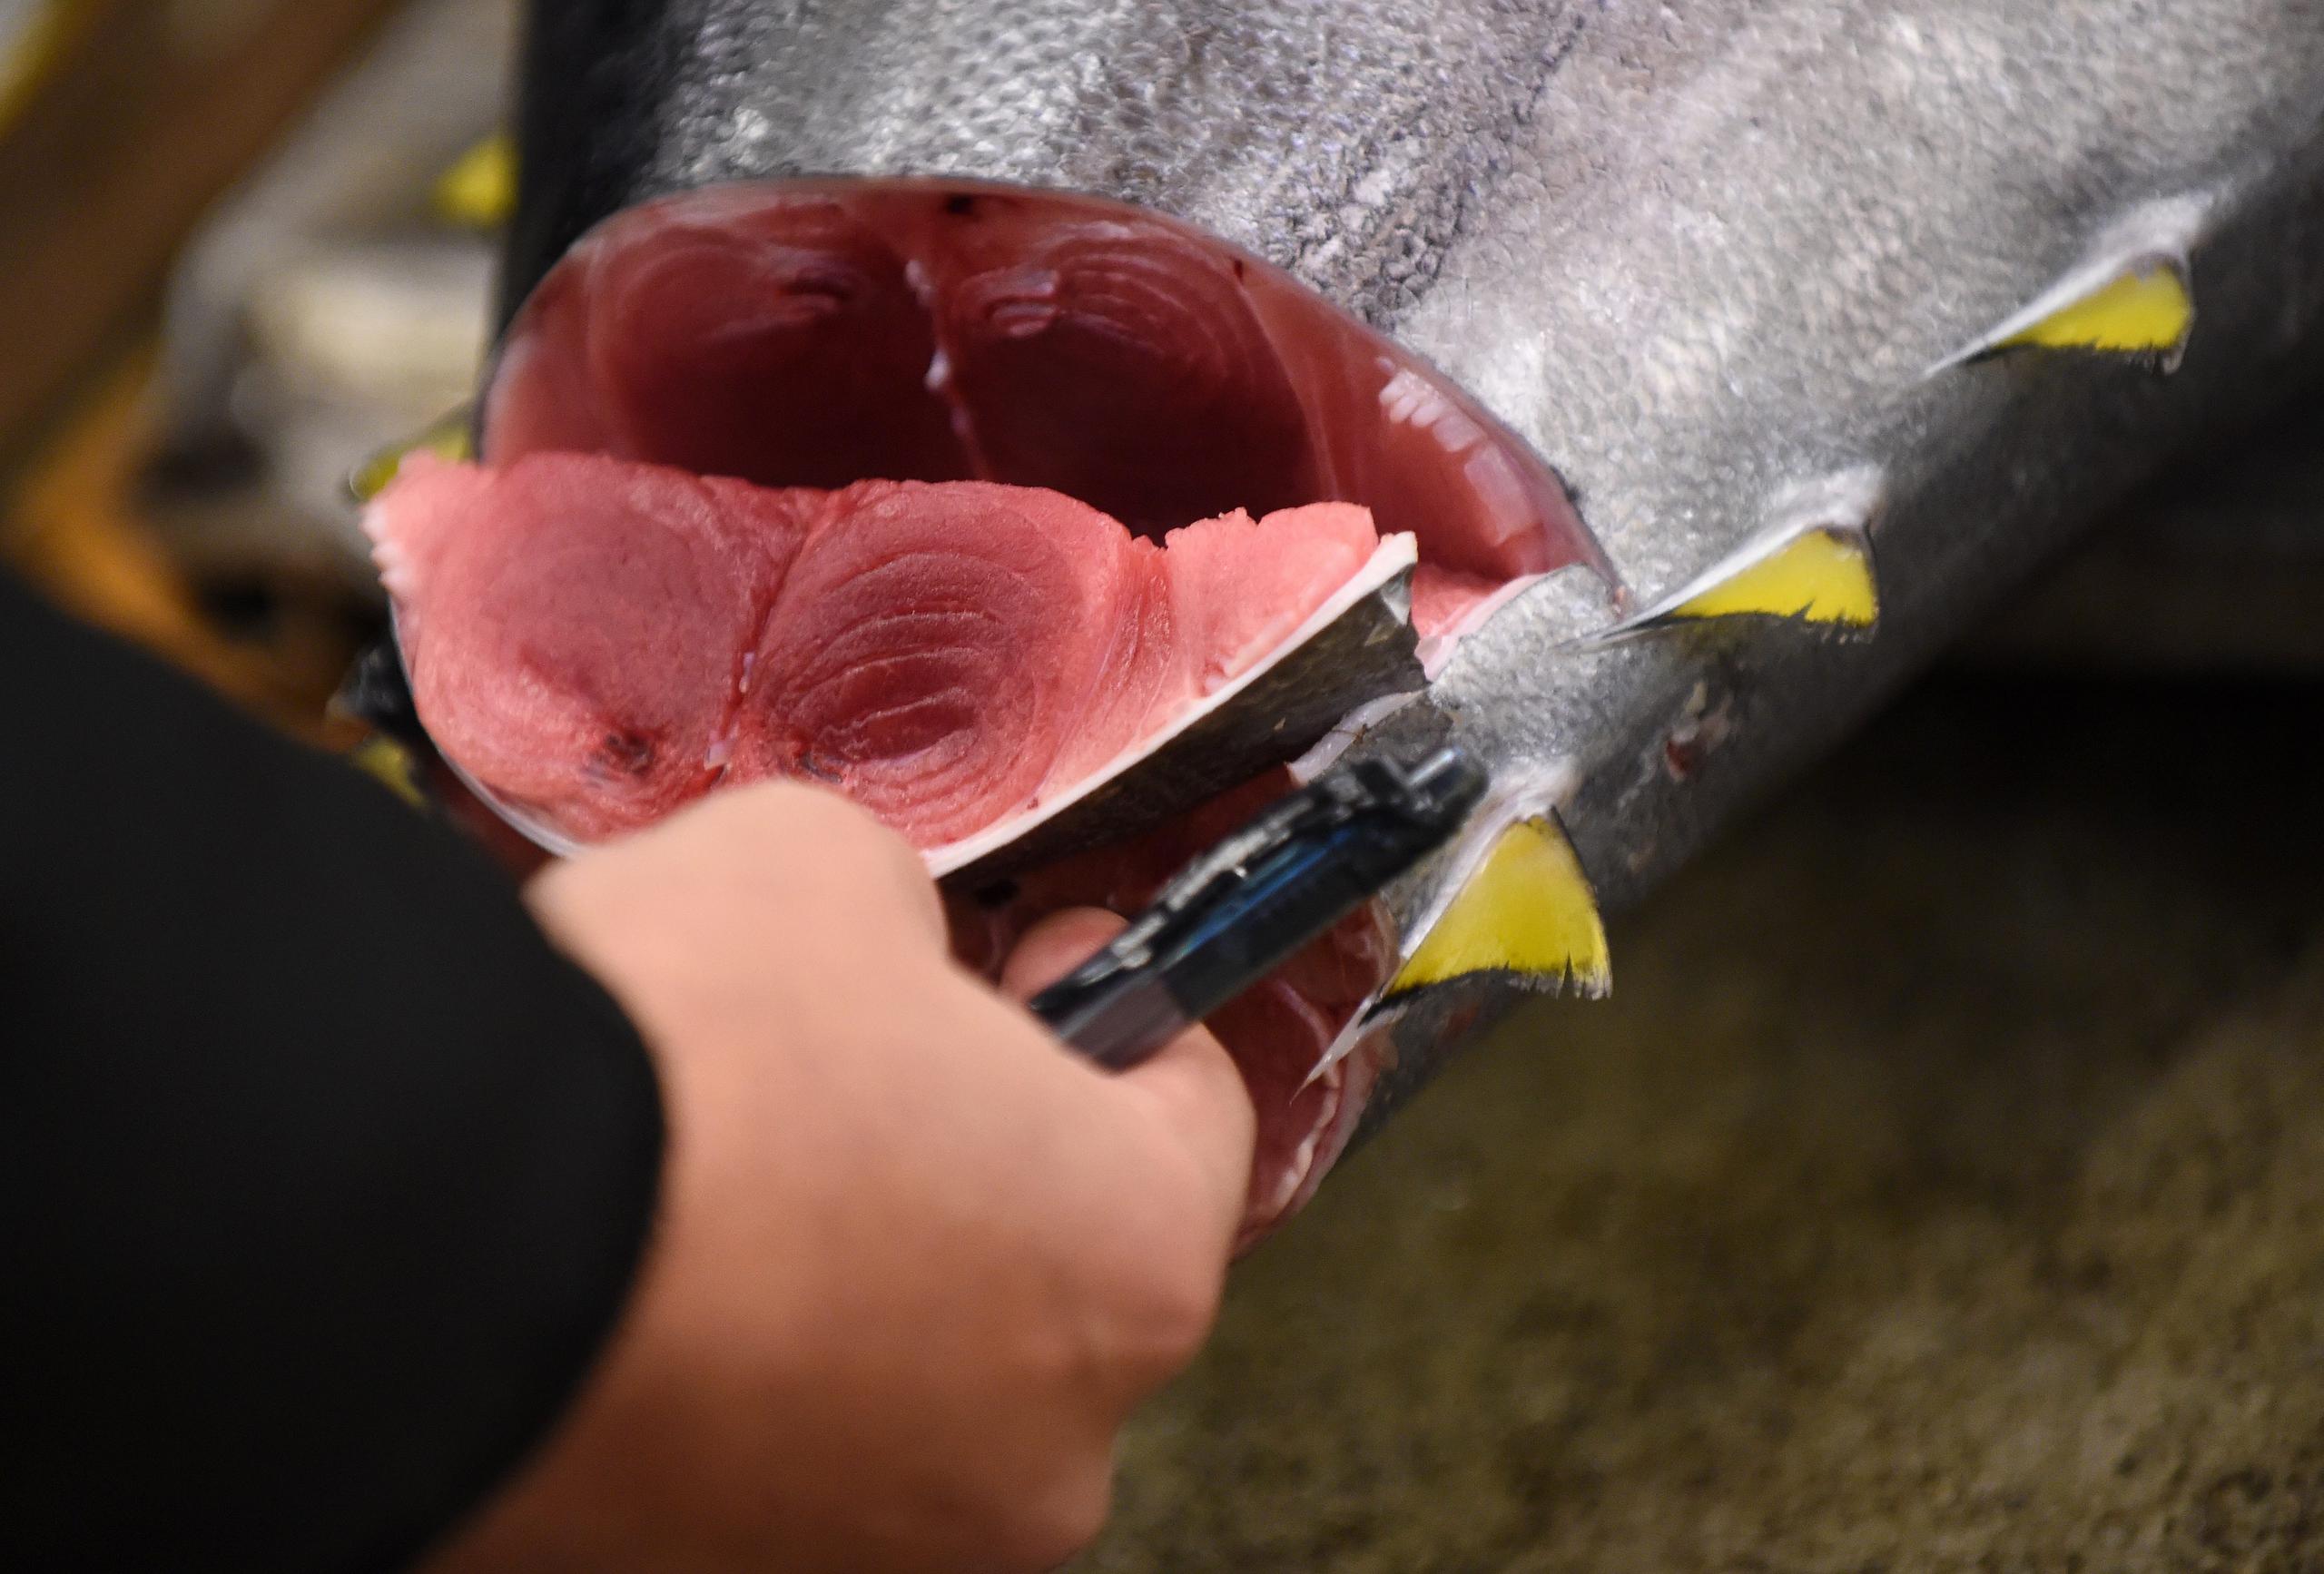 El récord lo sigue ostentando un atún rojo que alcanzó los 2.52 millones de dólares en la primera subasta de 2019, la primera que se celebró en Toyosu después de que la lonja fuera trasladada ahí desde su anterior localización en el cercano barrio de Tsukiji.